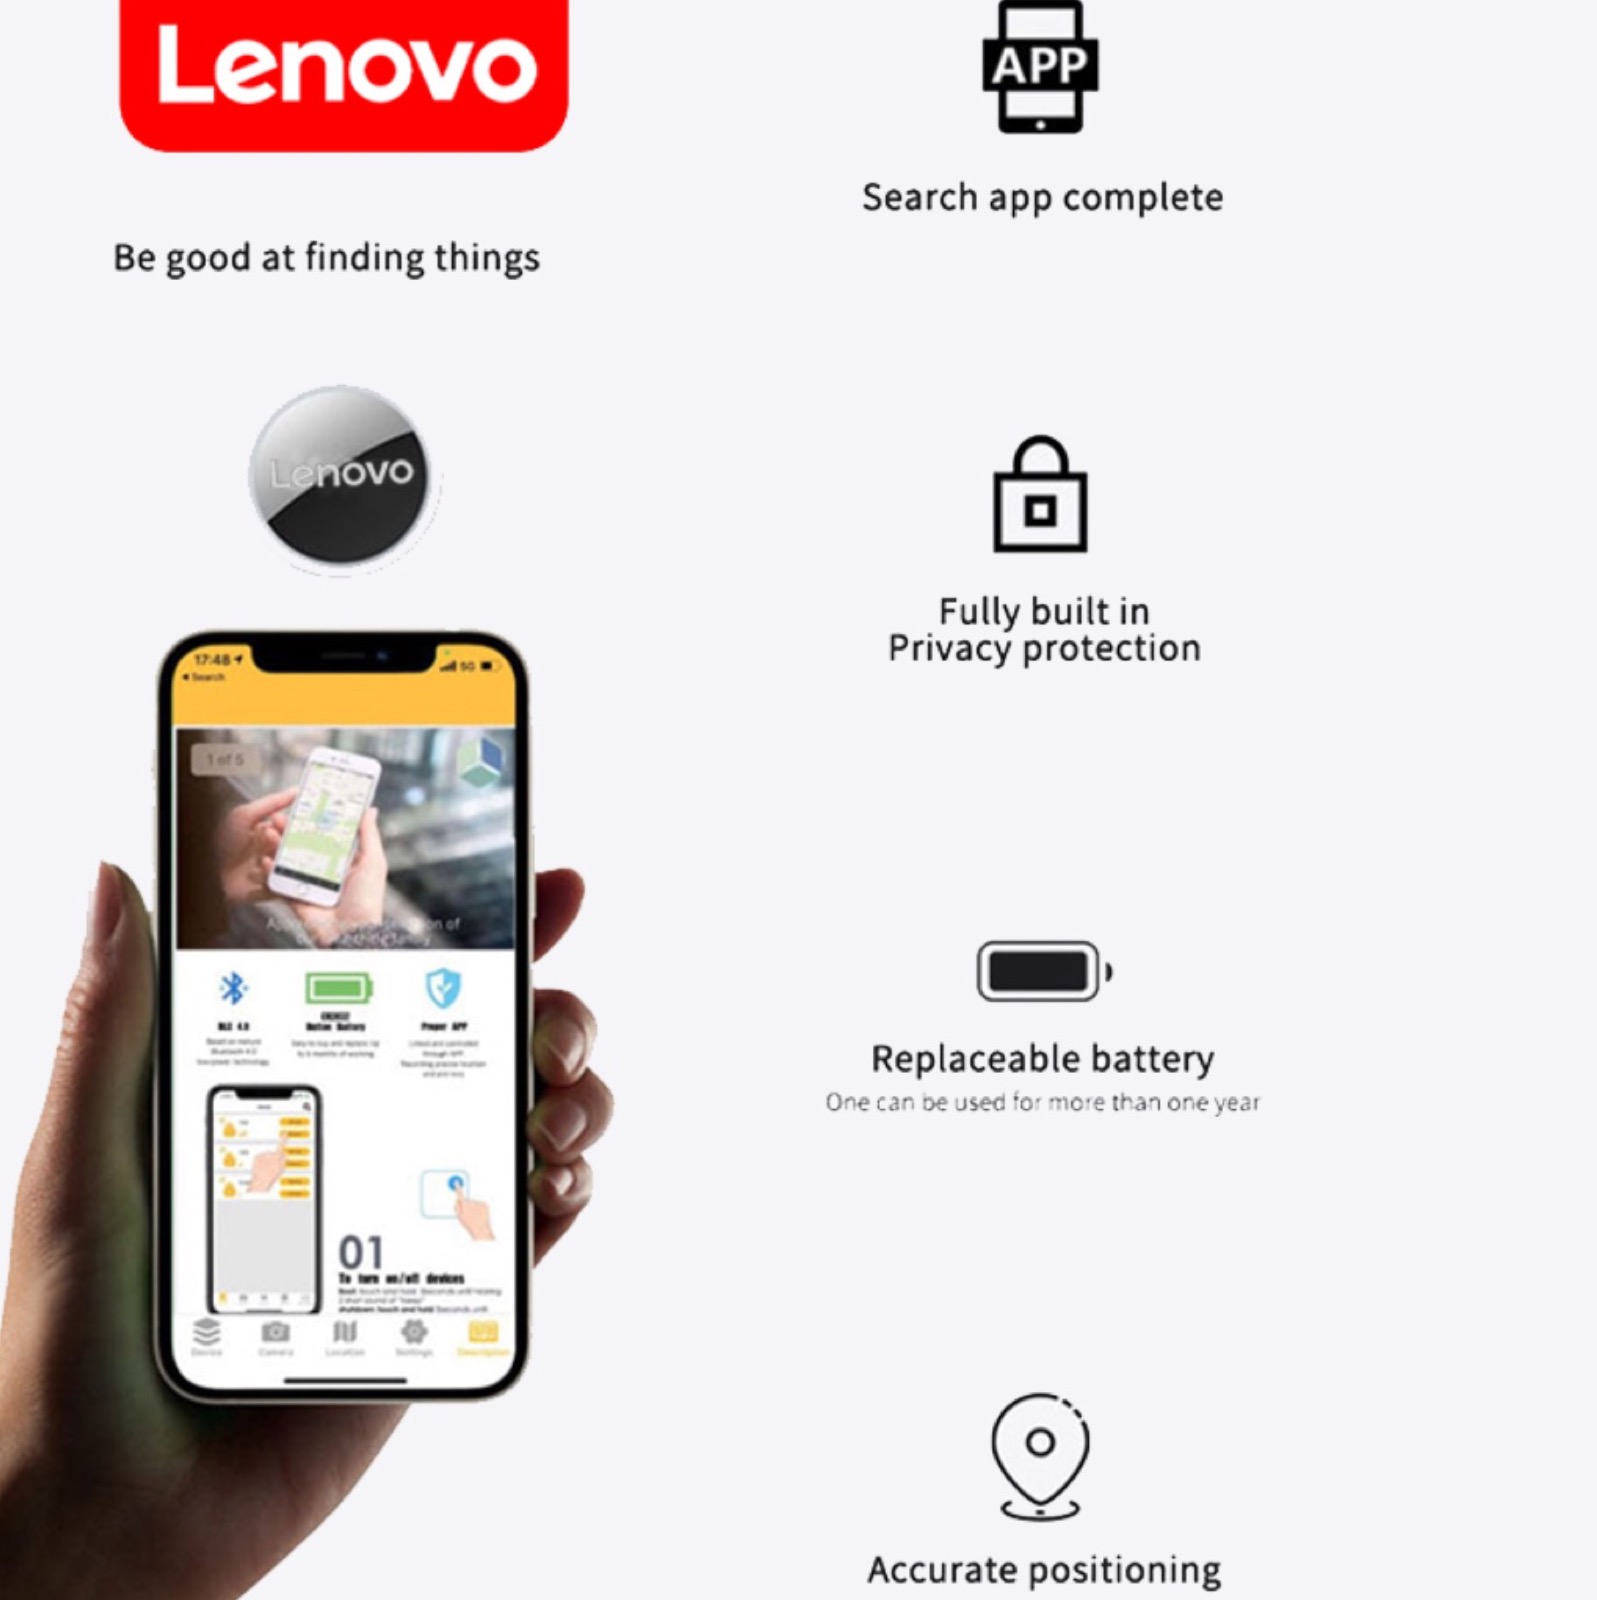 Il tracker di Lenovo in super offerta a soli 3 €